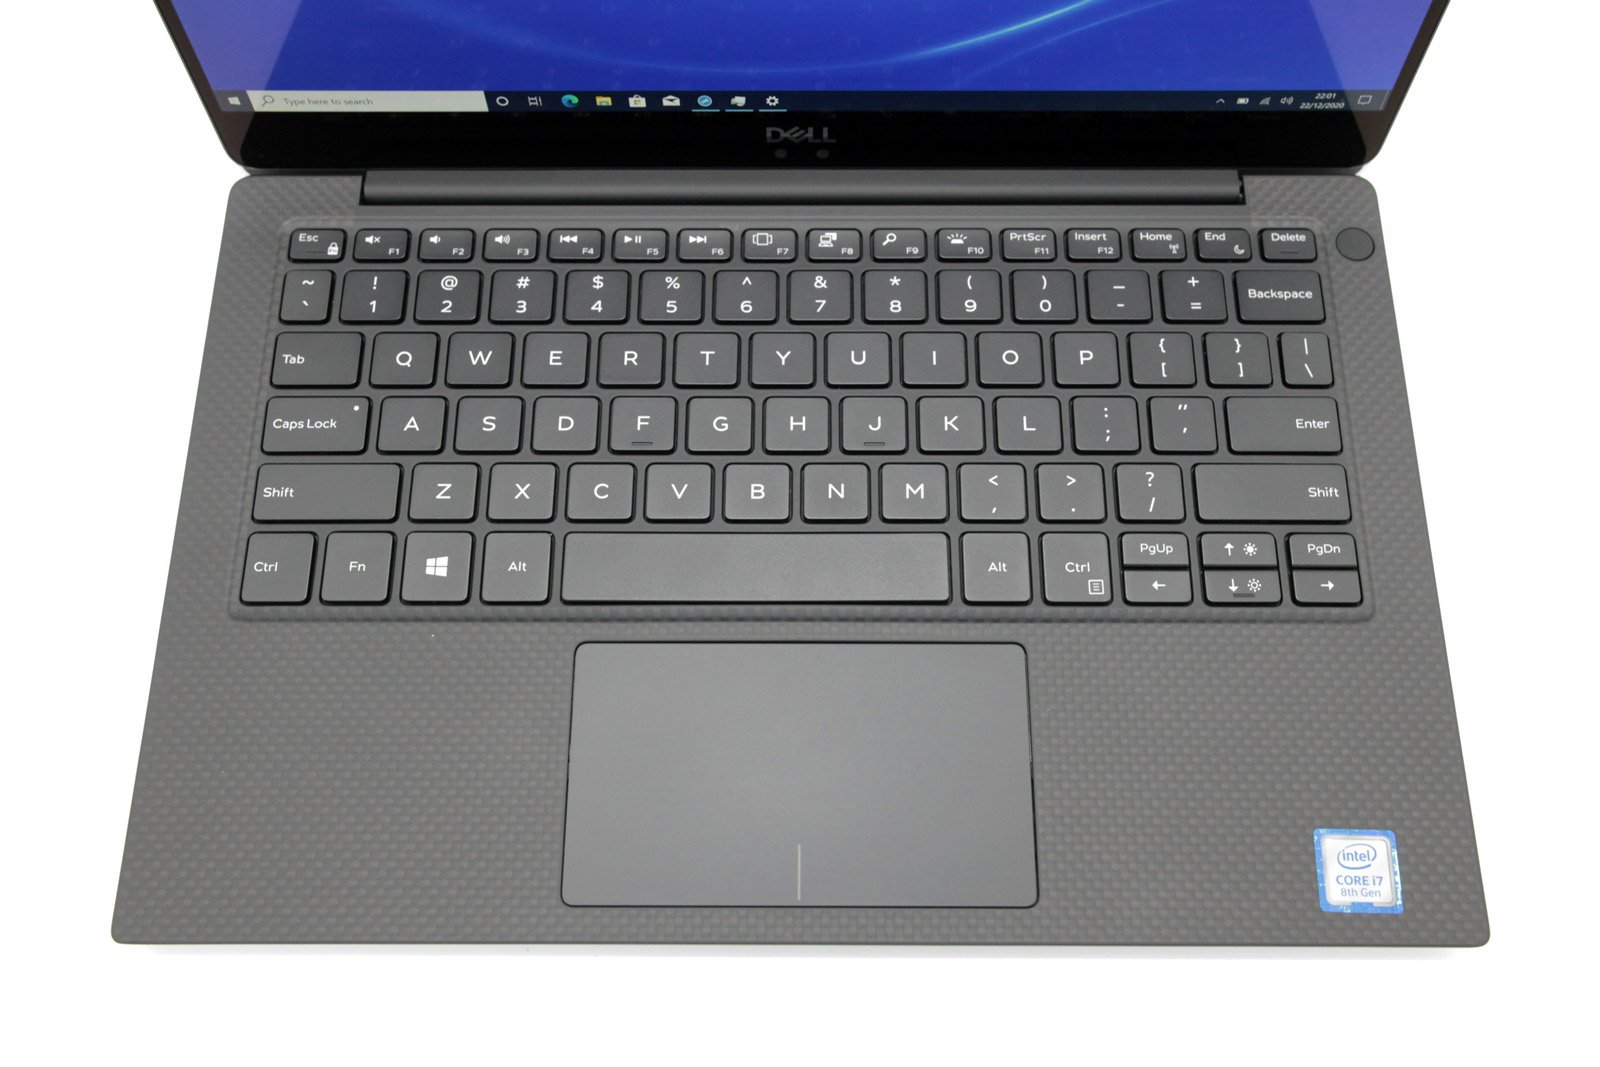 Dell XPS 13 9370 4K Laptop: Intel Core i7 8th Gen, 512GB SSD, 16GB RAM, Warranty - CruiseTech